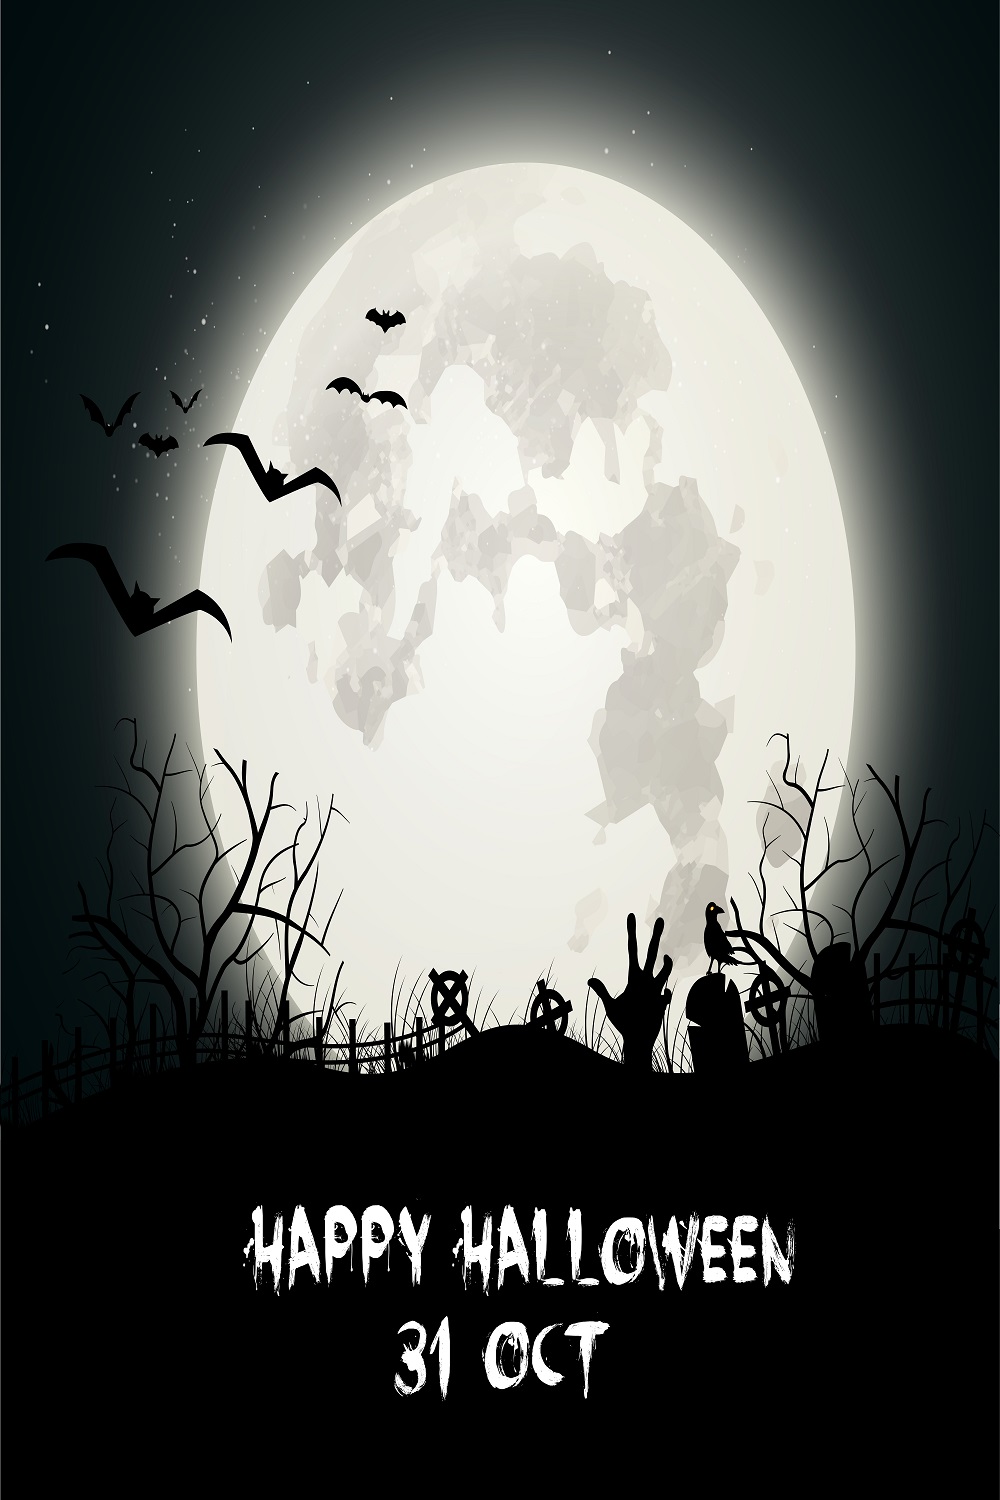 Dark Halloween background pinterest preview image.